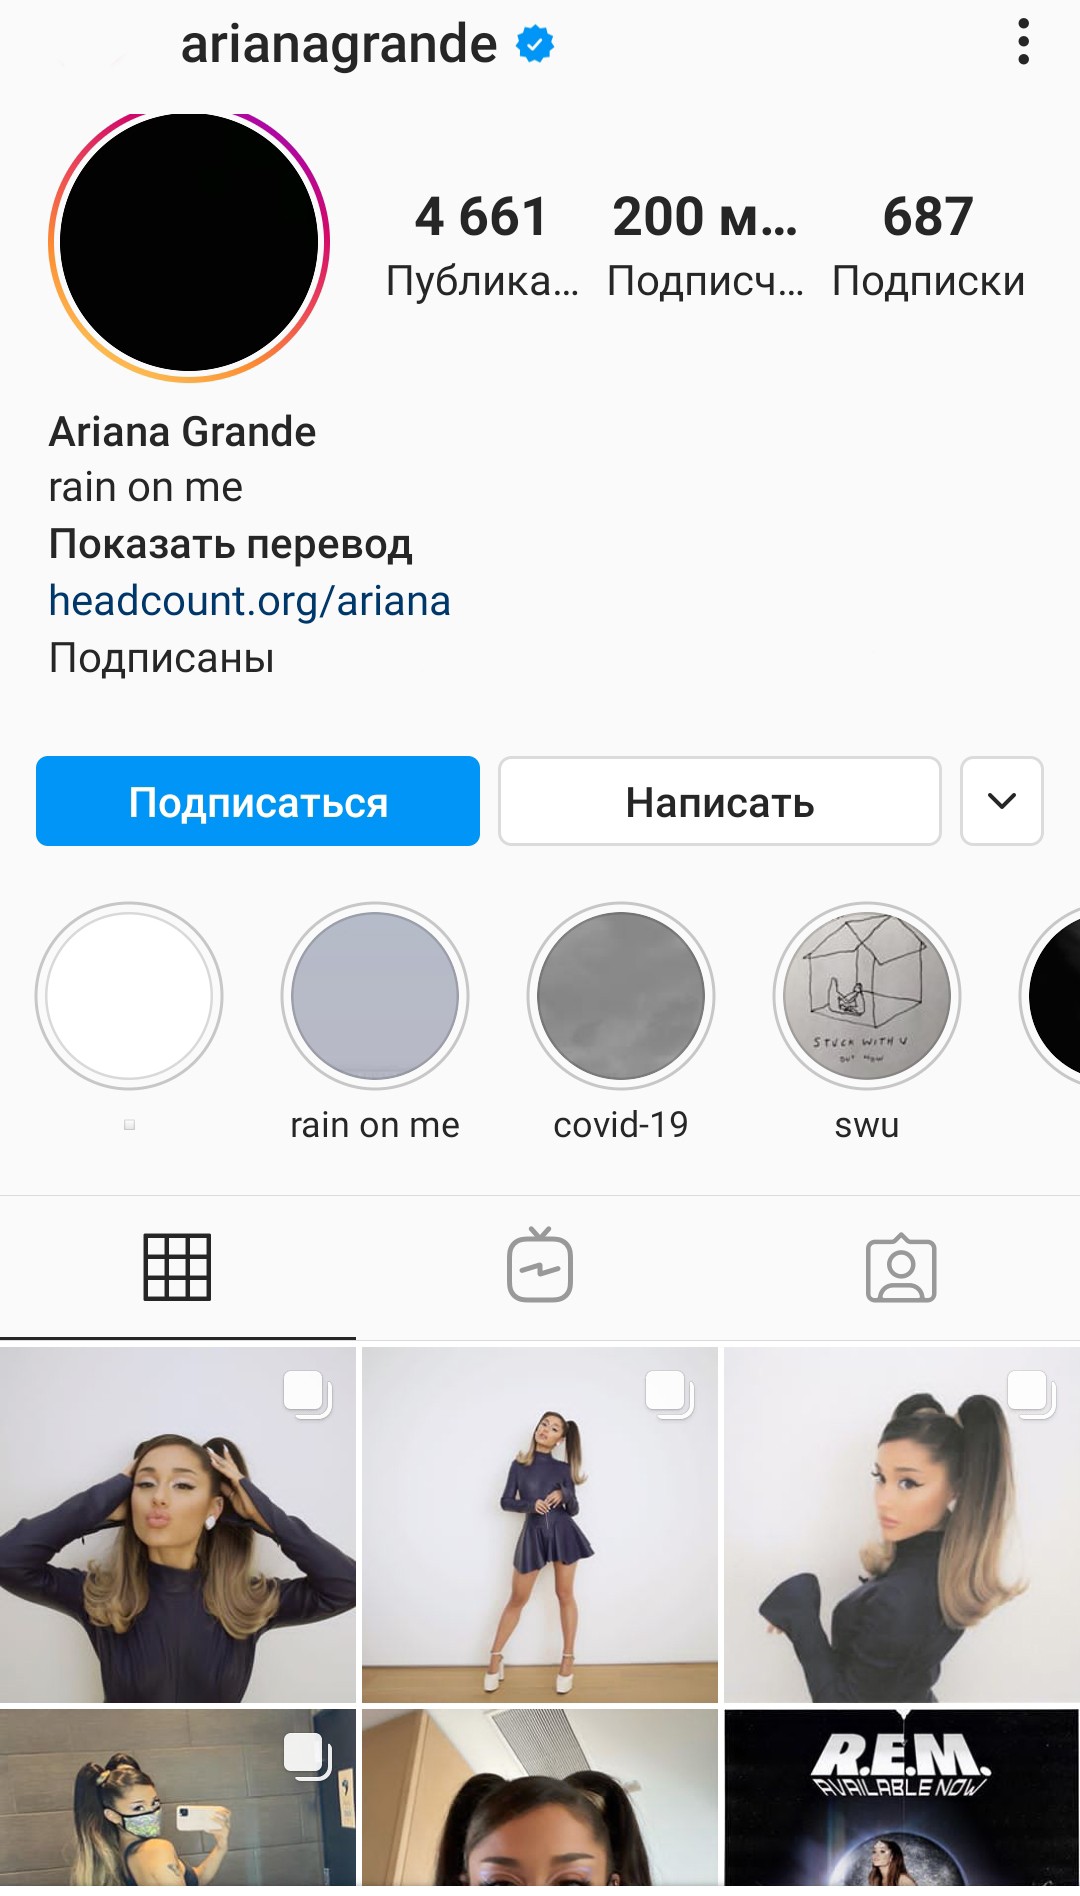 Ариана Гранде стала первой женщиной, набравшей 200 млн подписчиков в Инстаграме